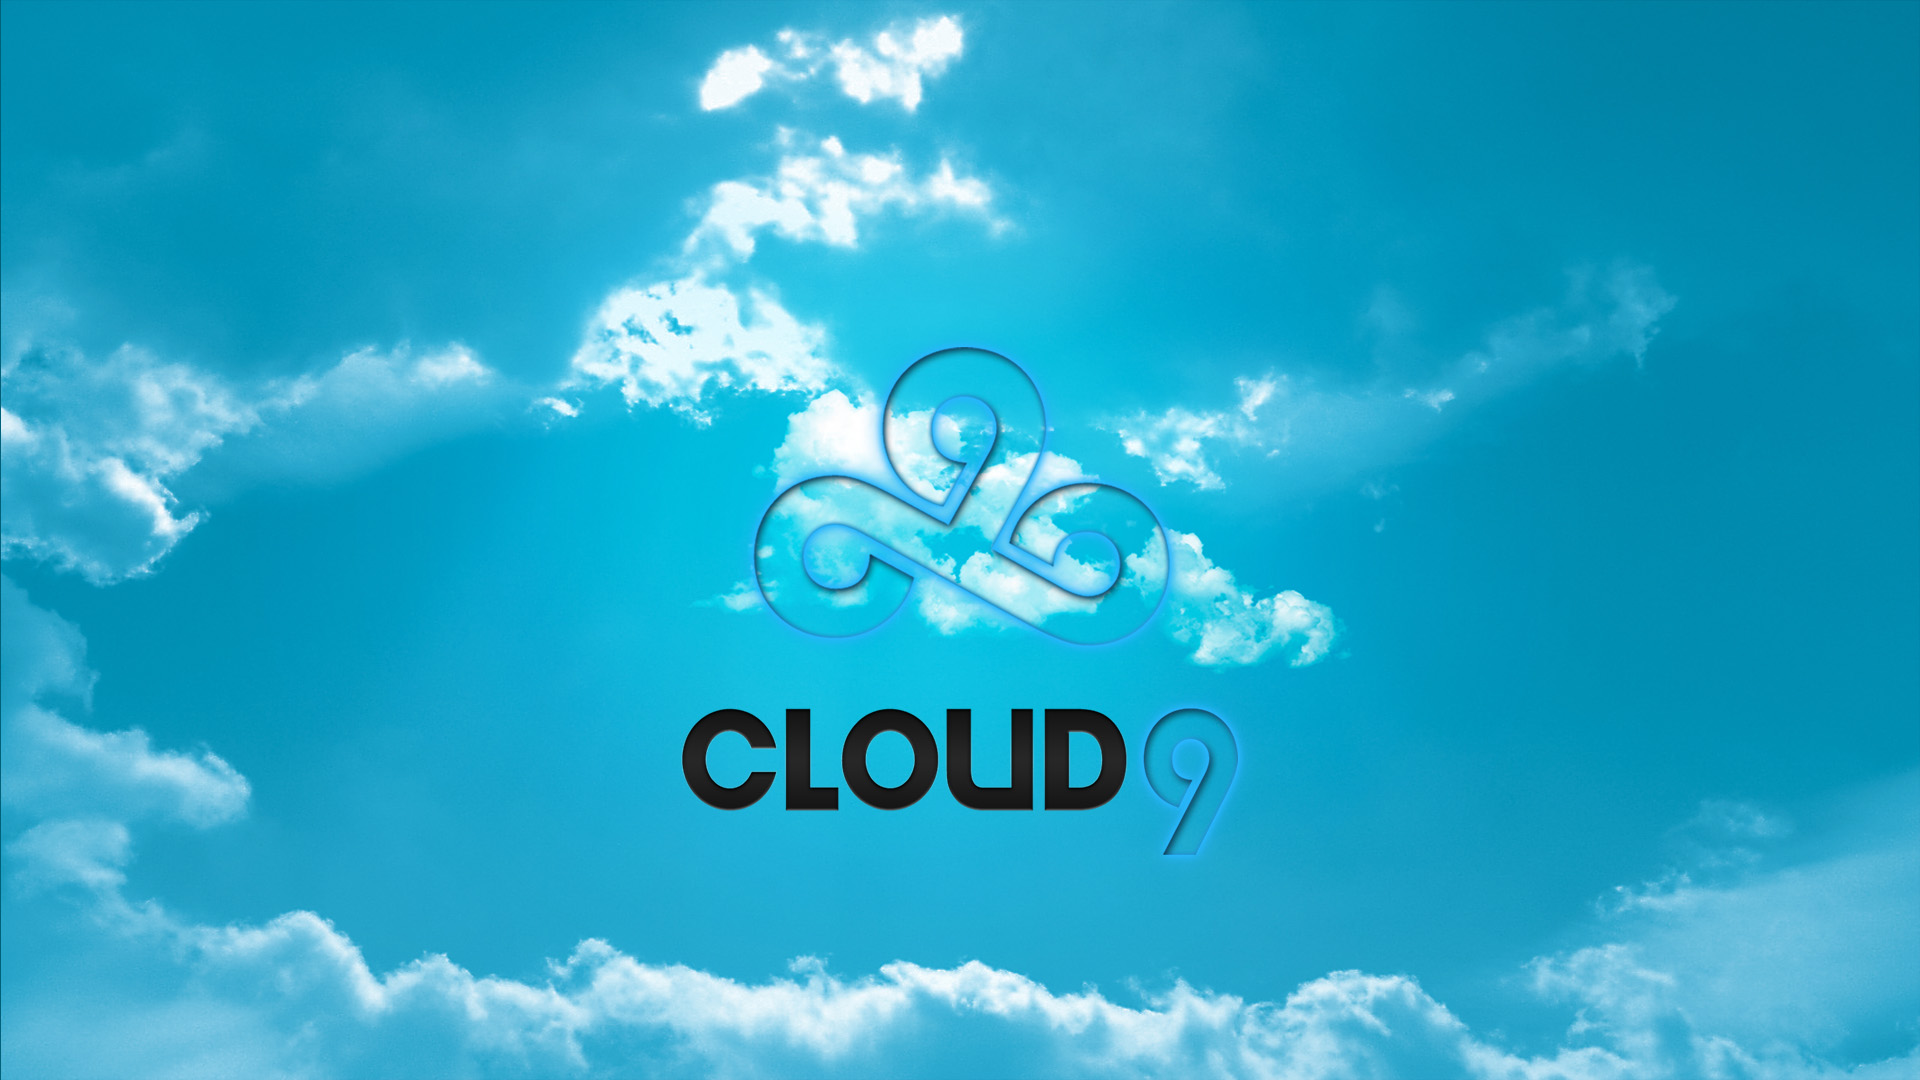 Télécharger des fonds d'écran Cloud 9 HD